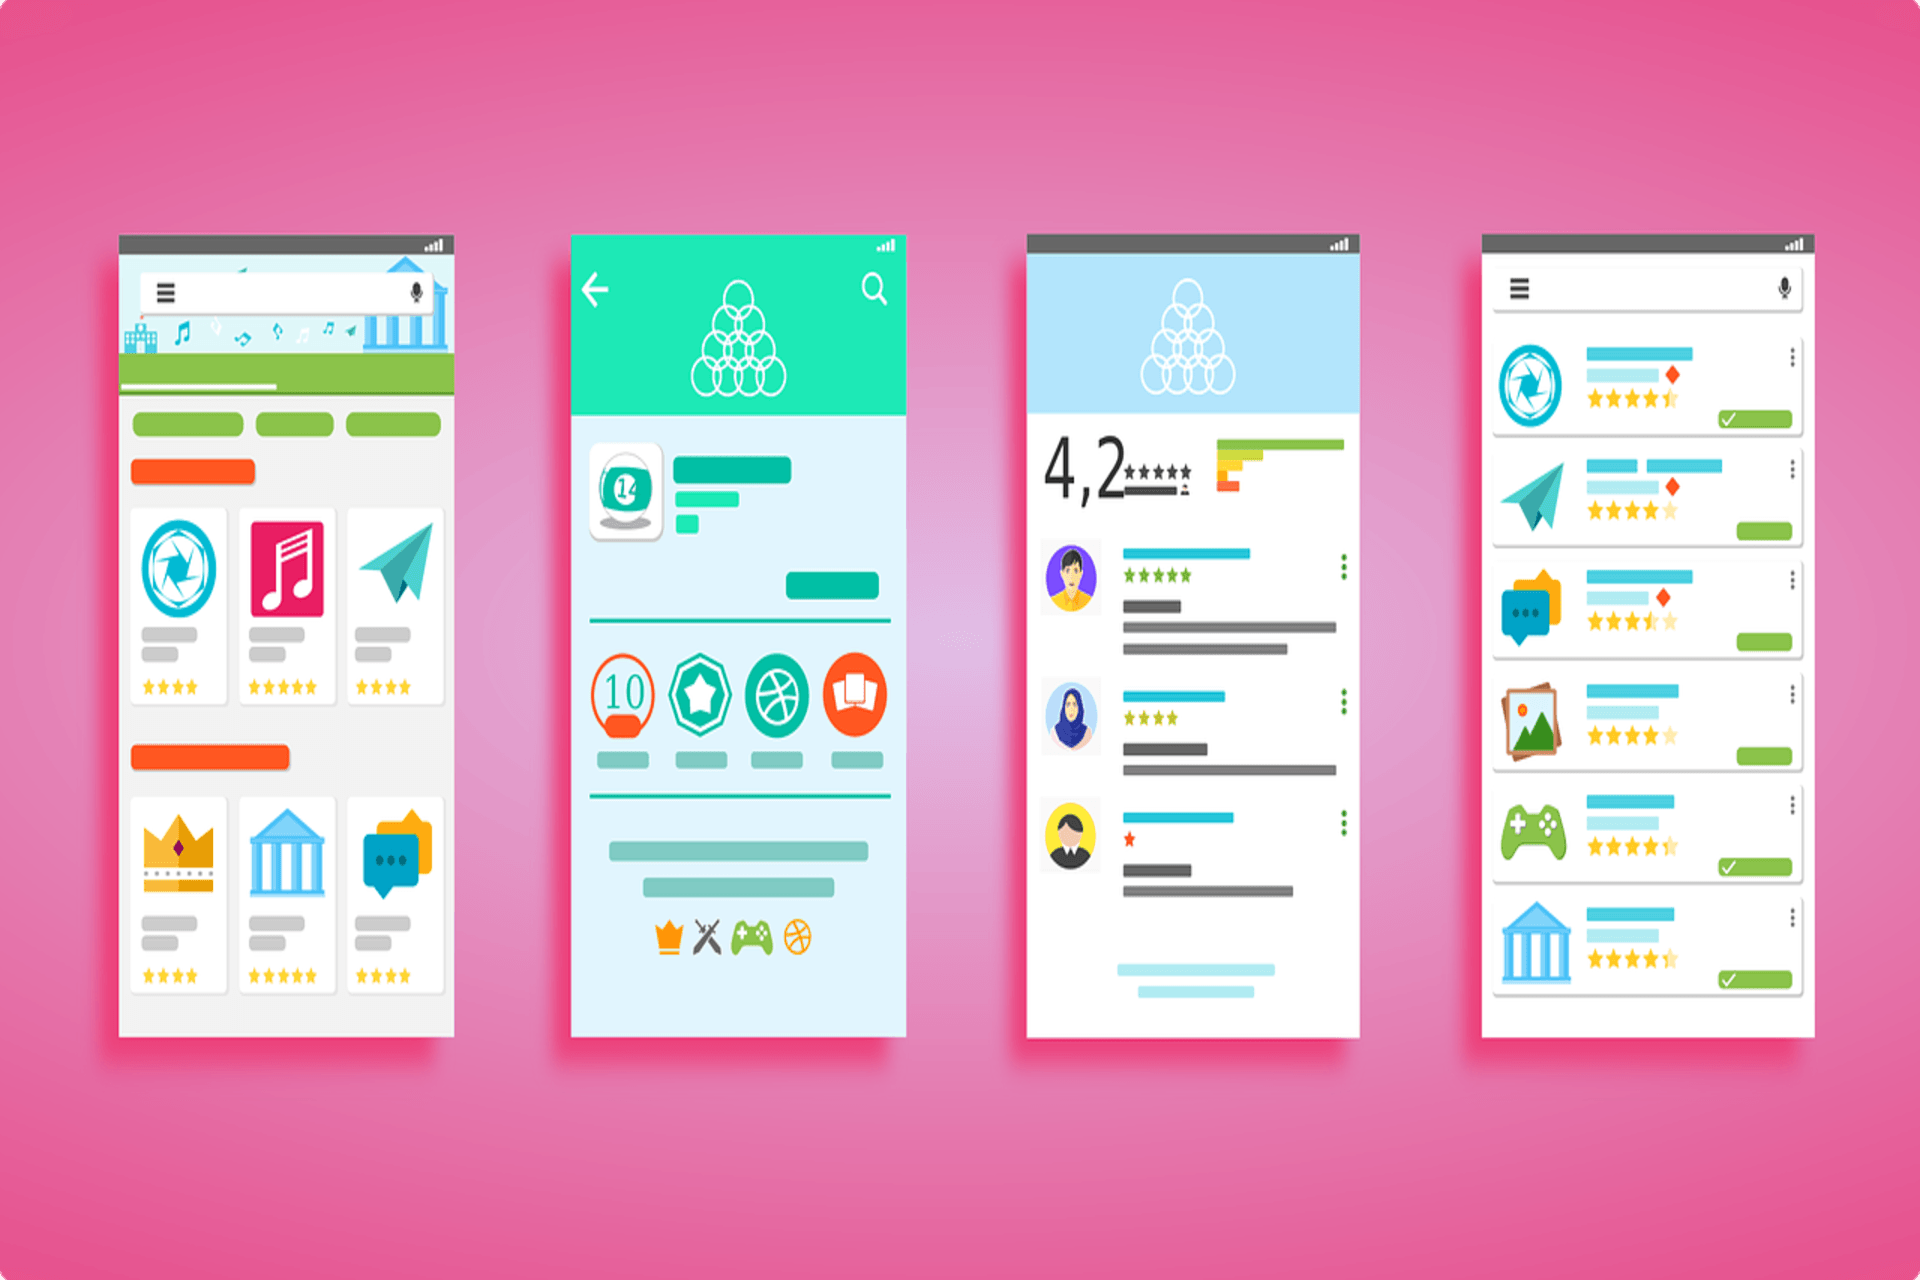 Design-de-Interacao-para-Aplicacoes-em-Android-e-iOS